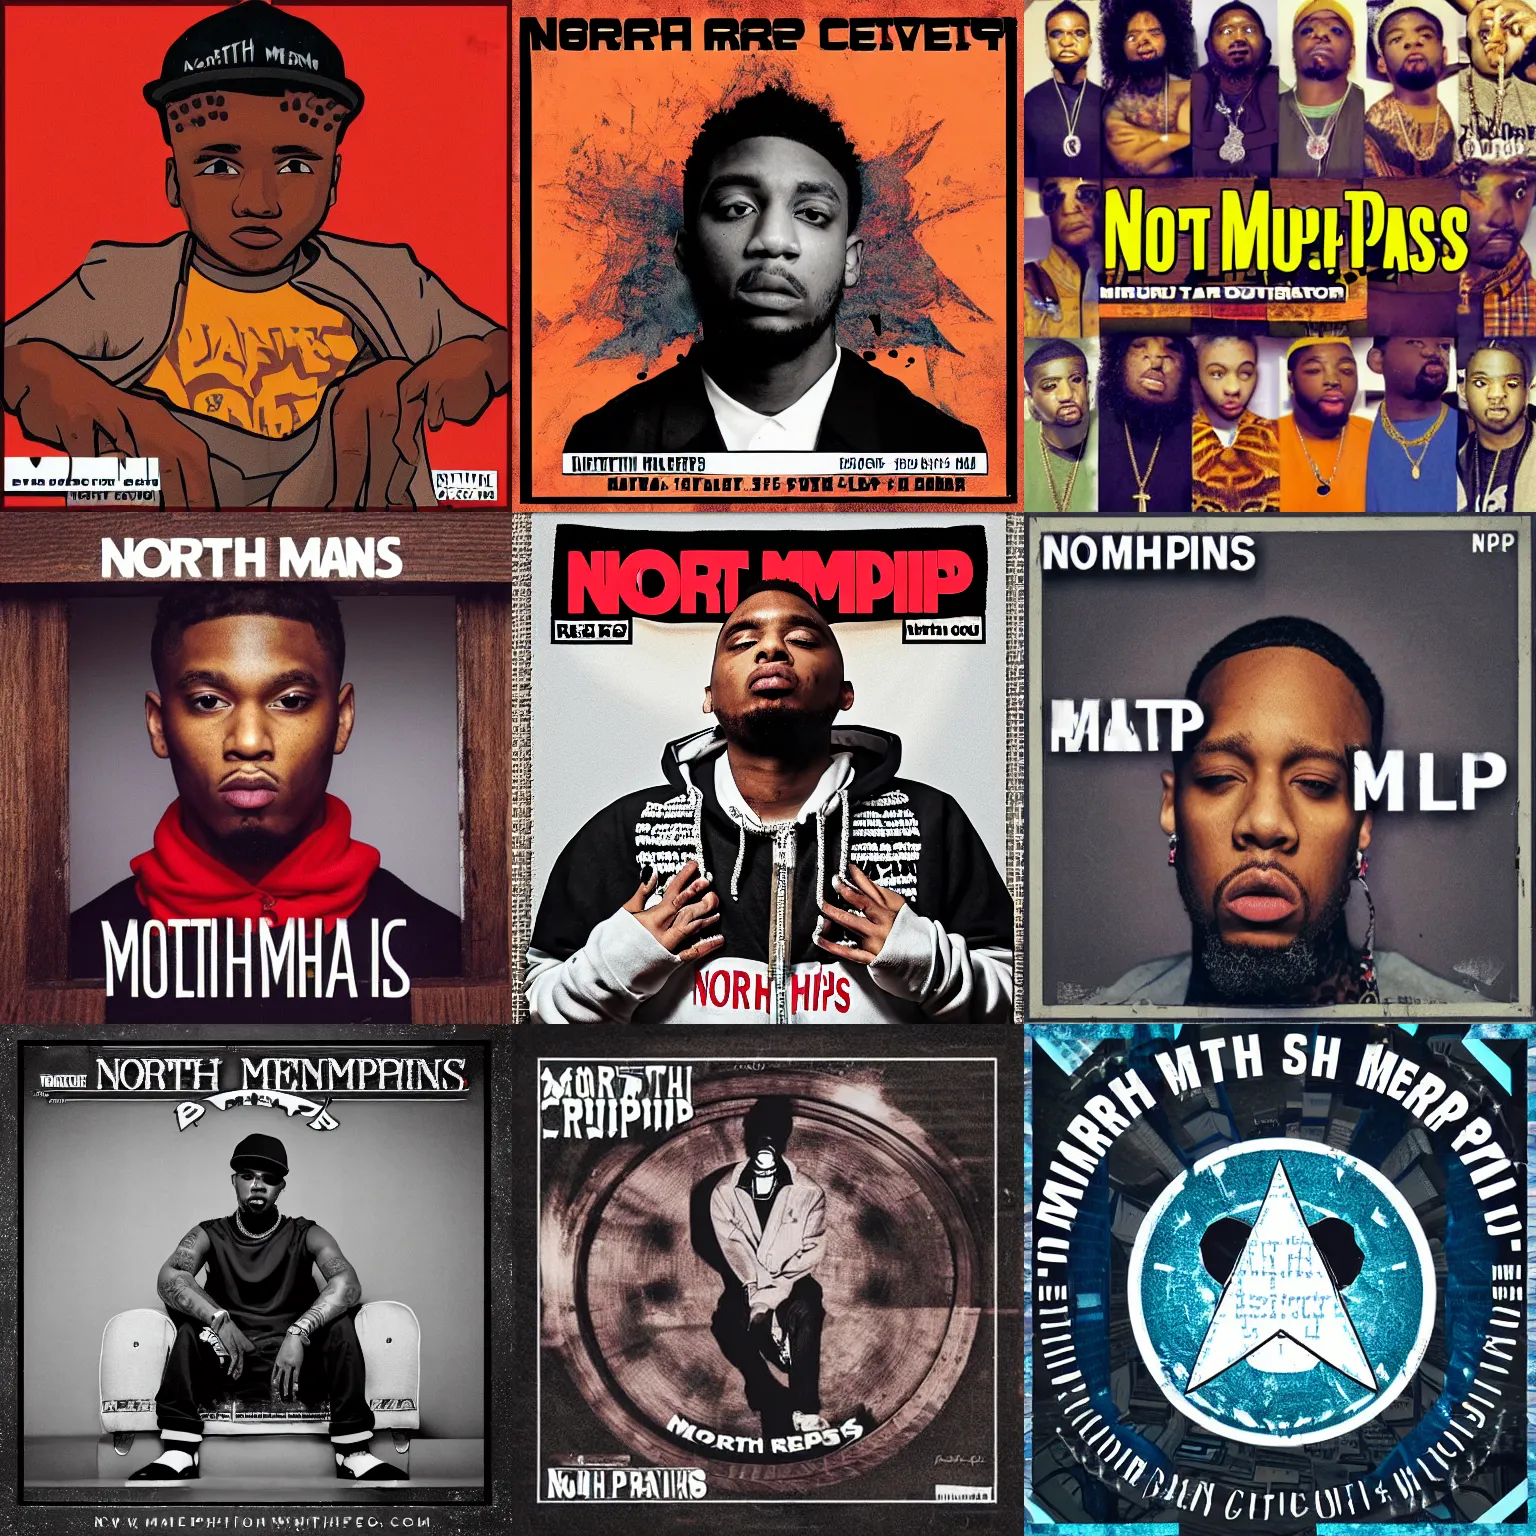 Prompt: North Memphis rap cover art